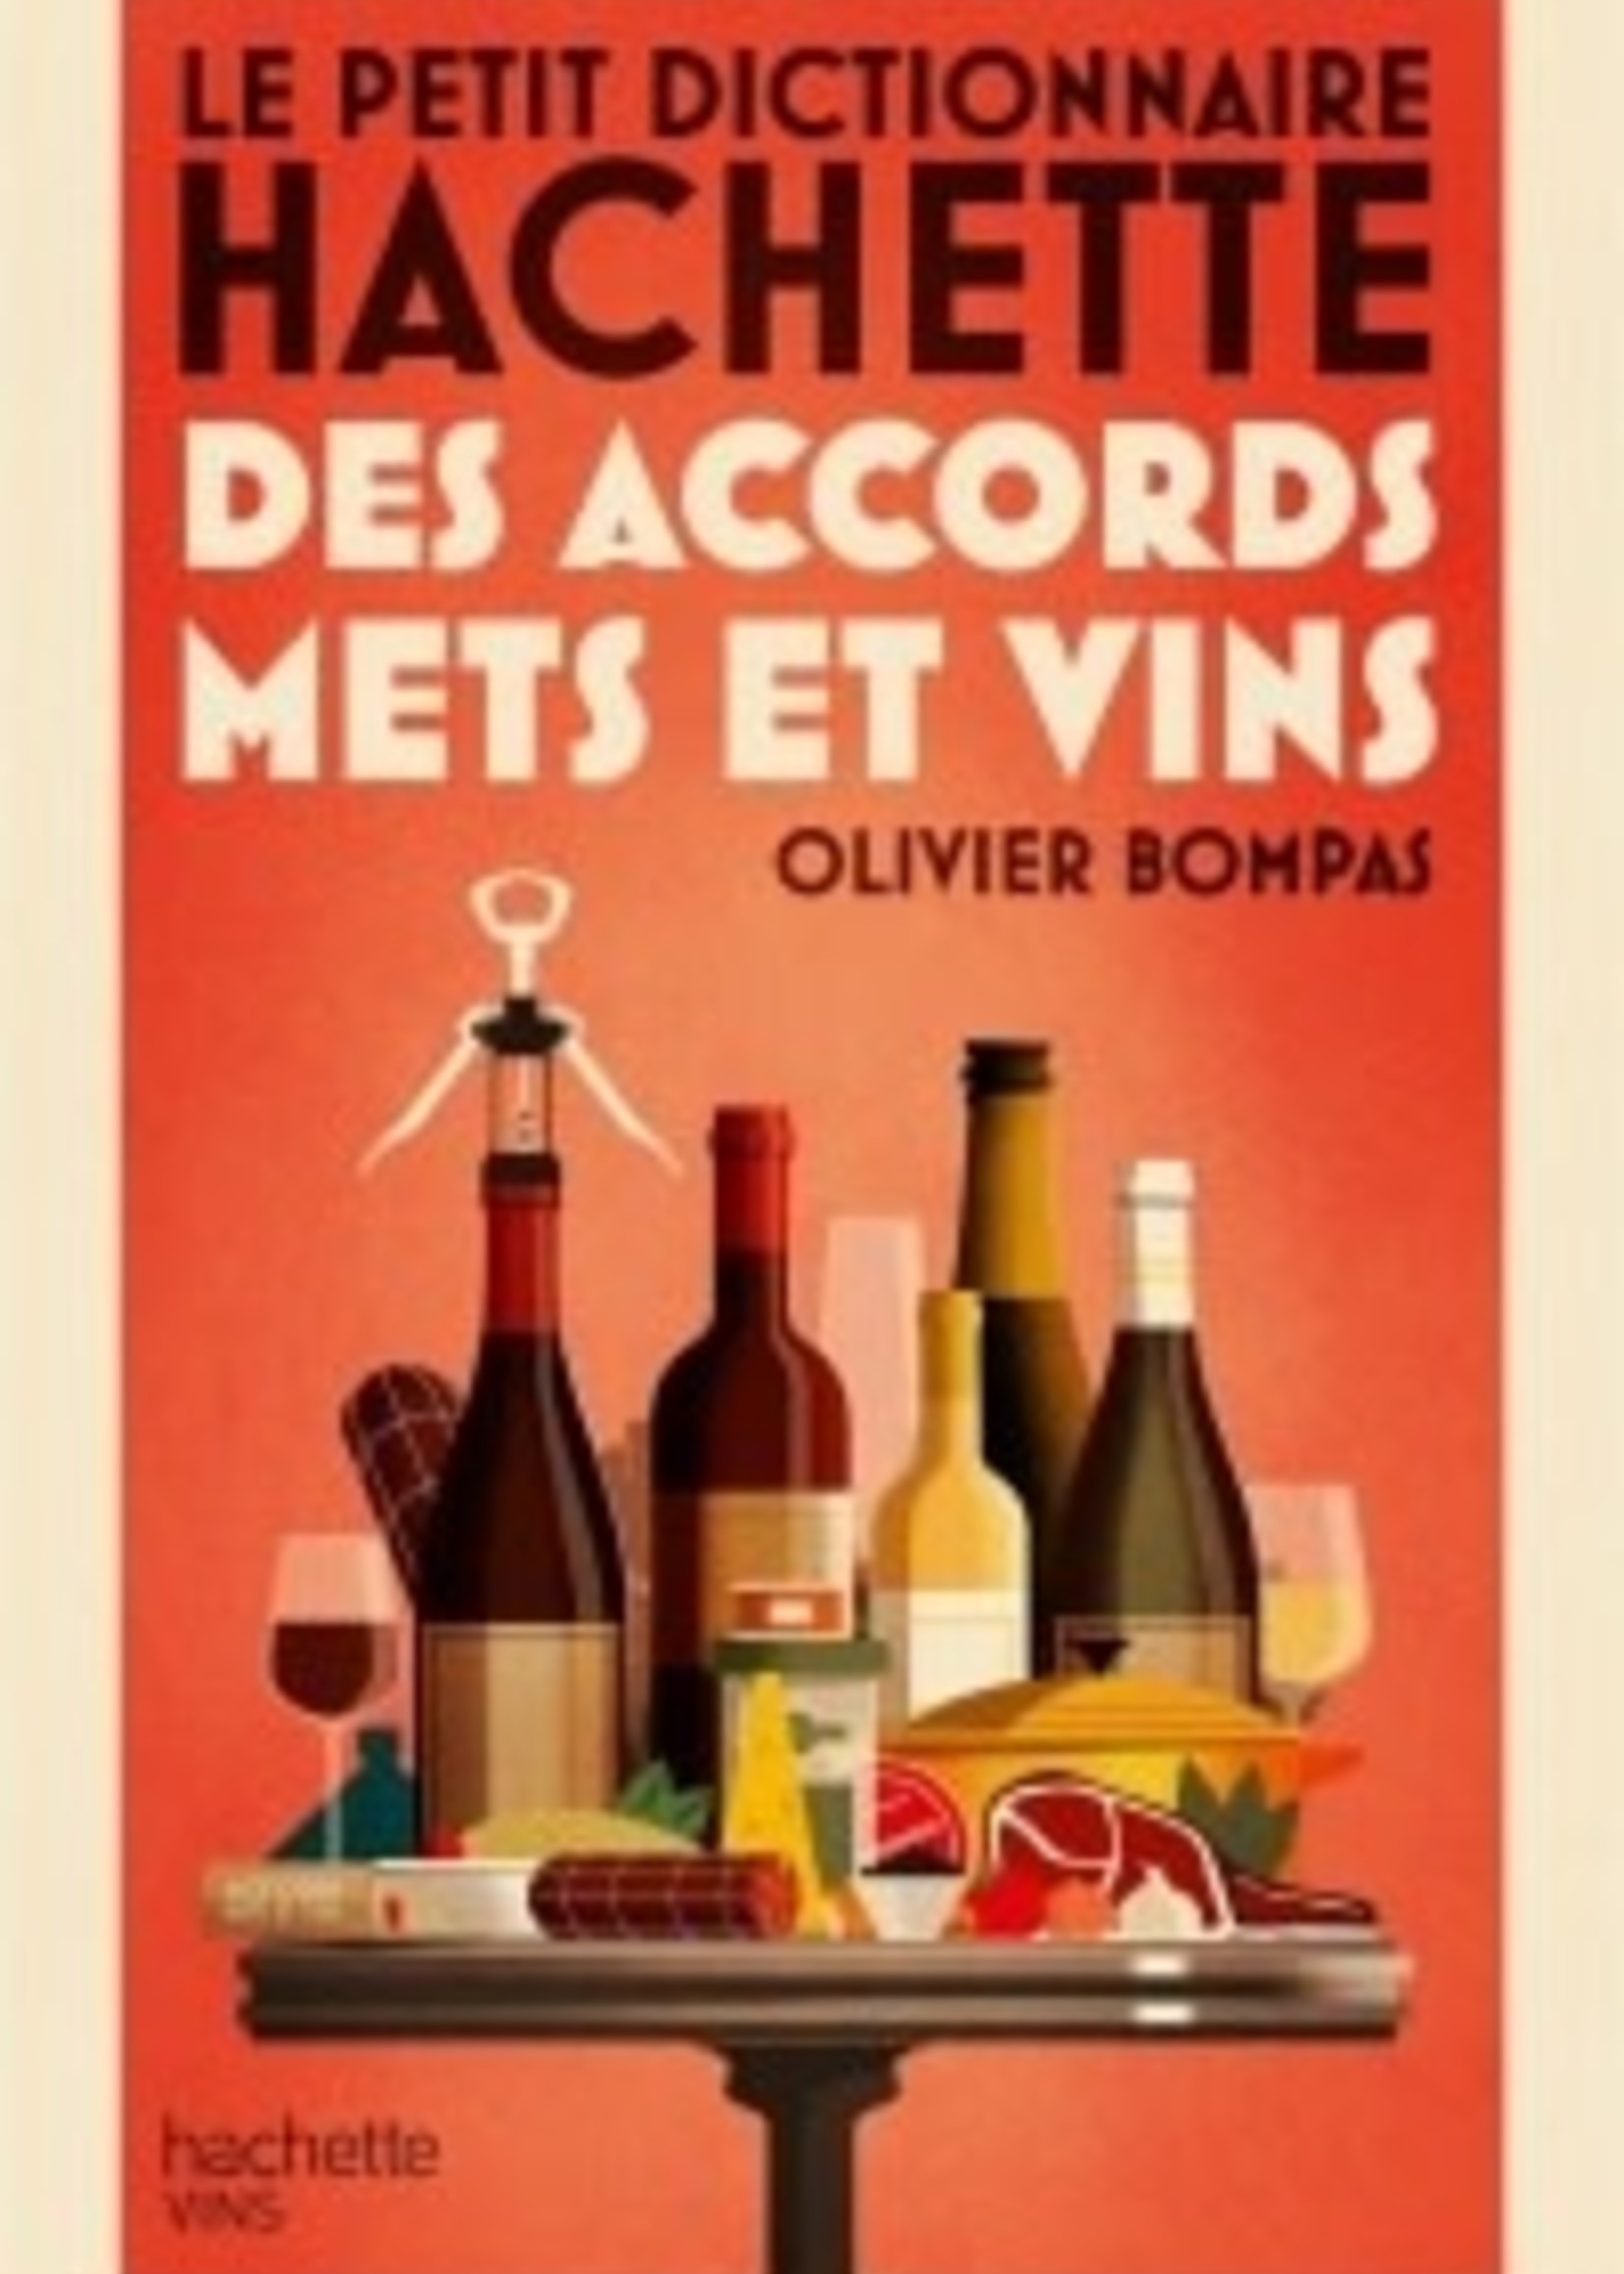 Hachette Le petit dictionnaire Hachette des accords mets et vins -  Olivier Bompas